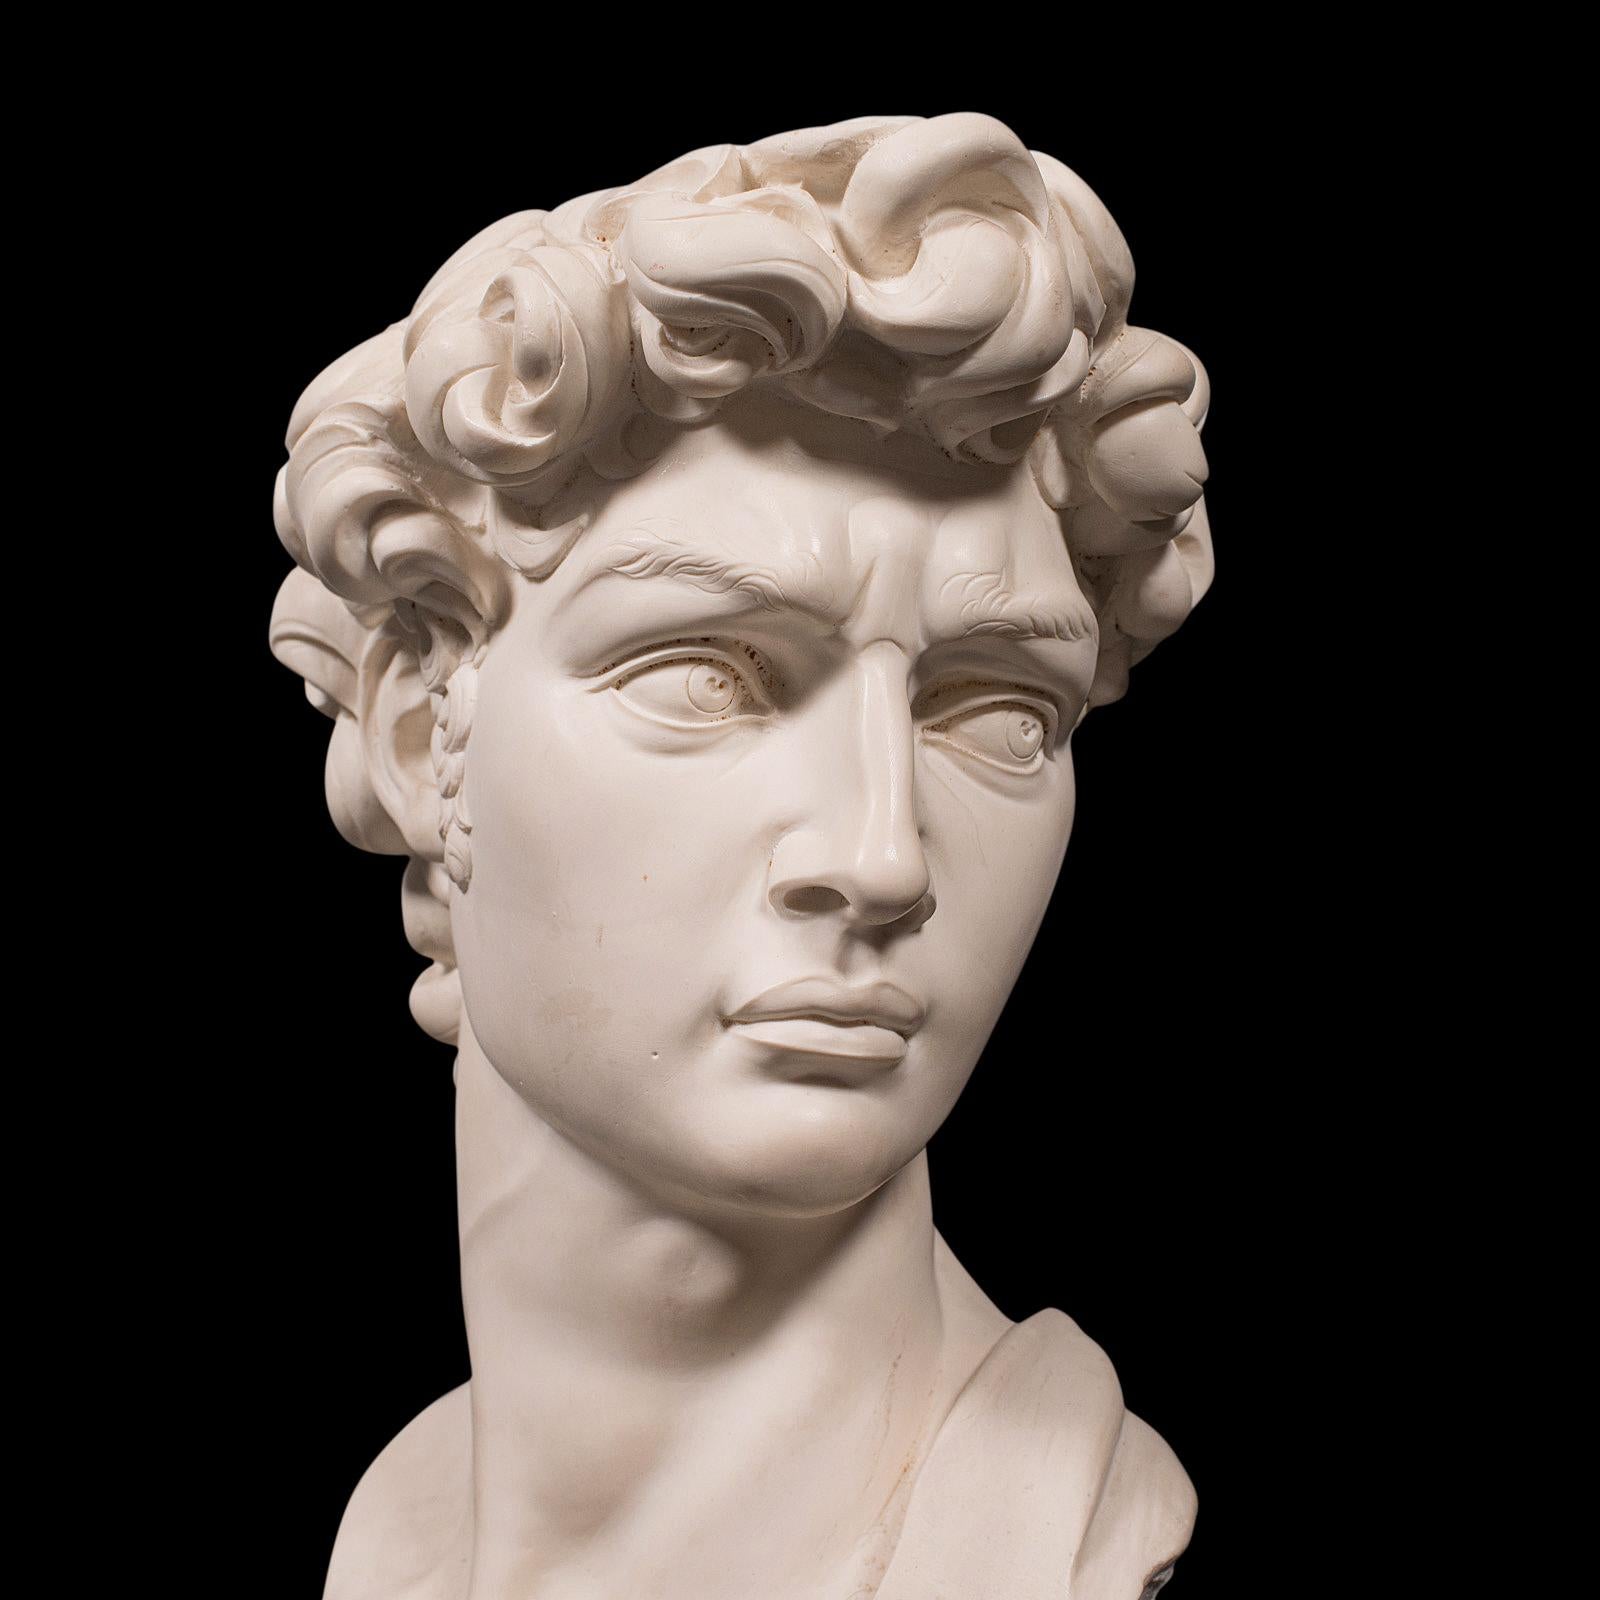 Vintage Portrait Bust, Italian, Marble Base, Statue, Michelangelo, David, Decor 2